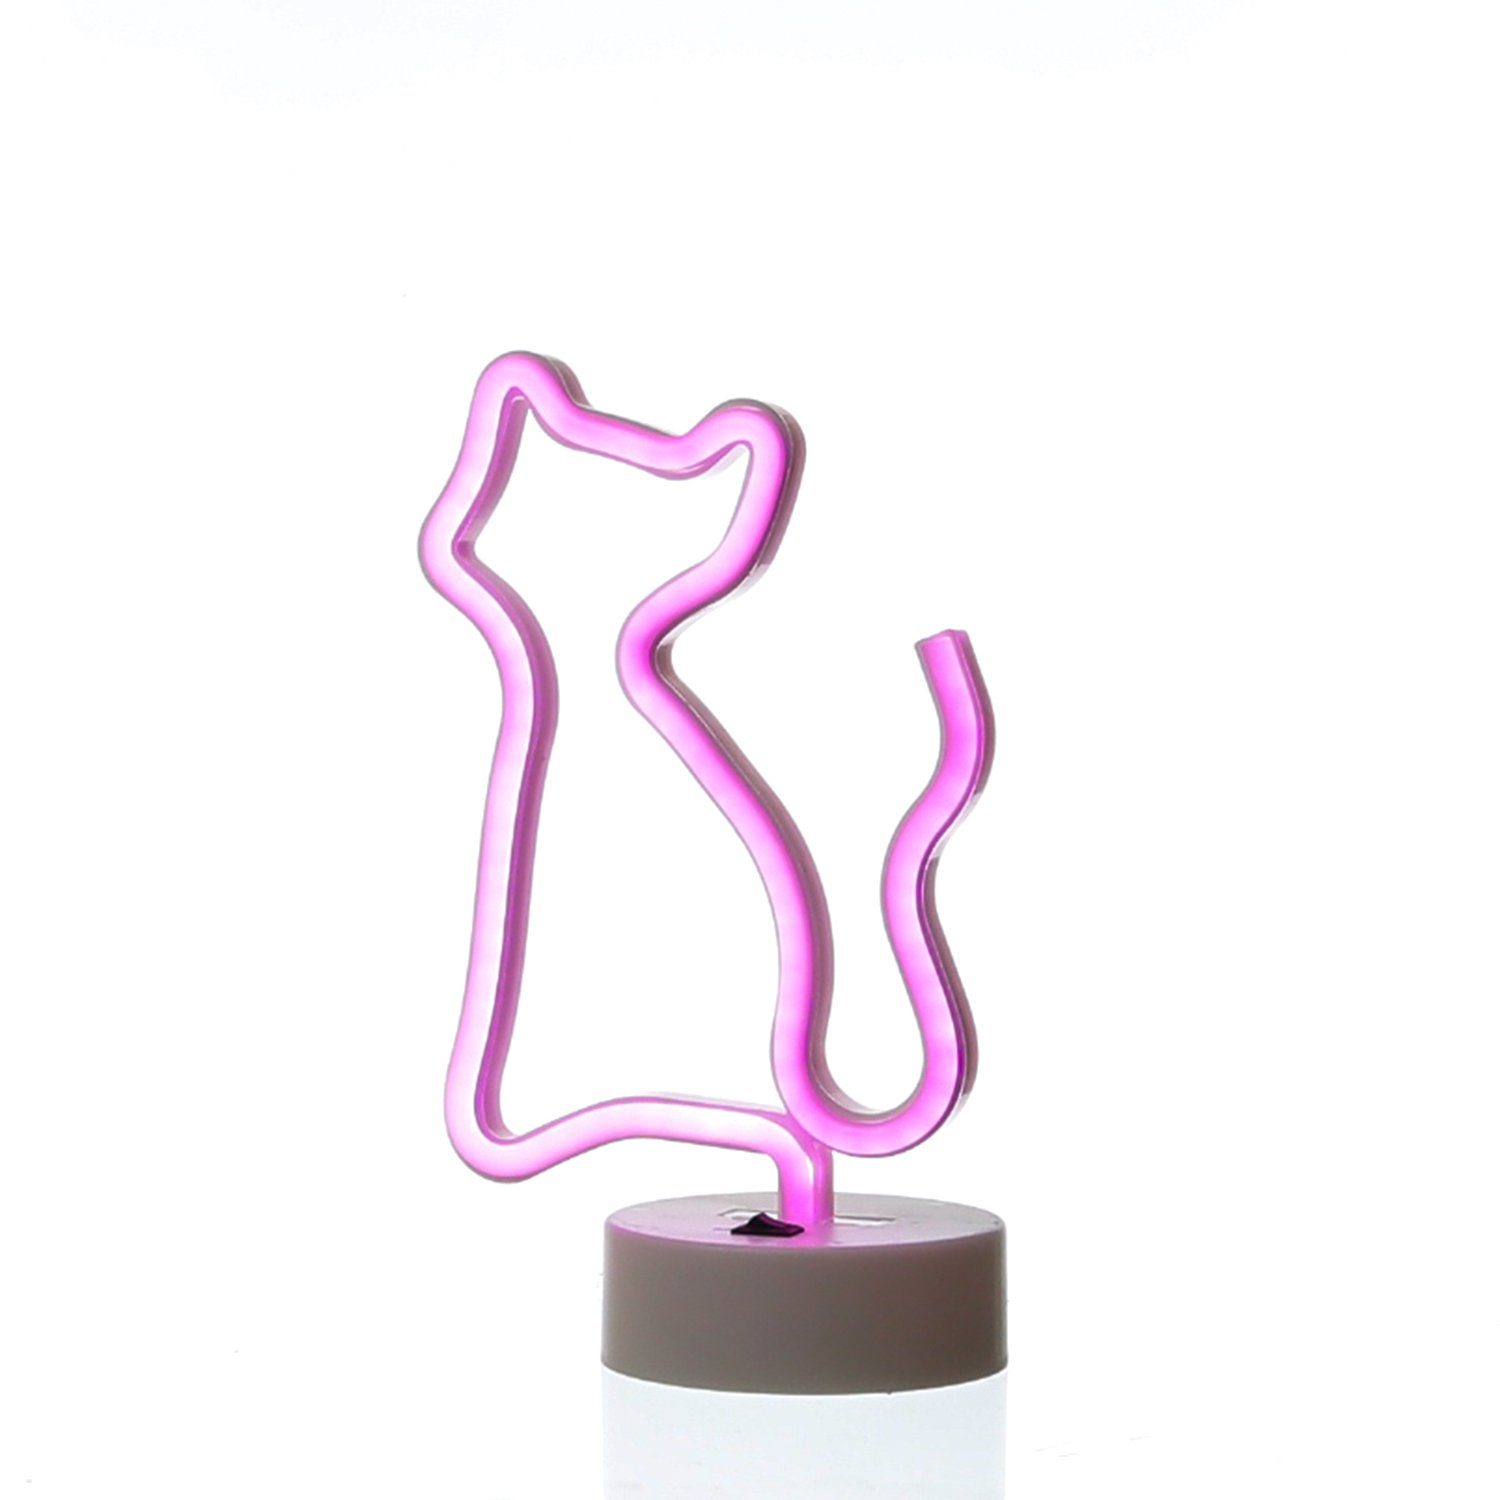 Neonlicht Neonschild pink SATISFIRE Leuchtfigur LED 25cm LED KATZE USB Dekolicht Batterie